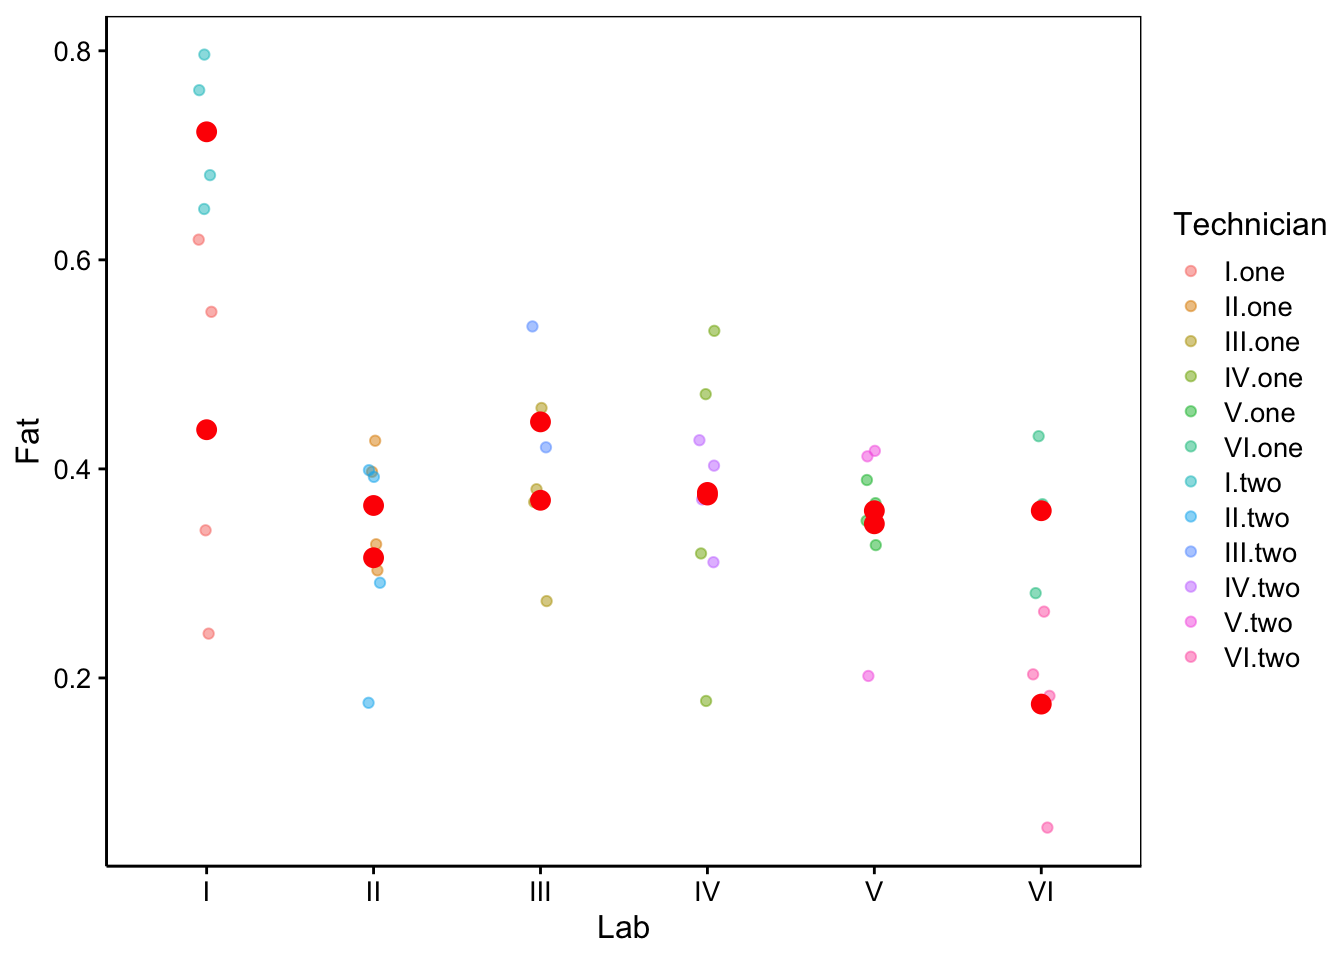 Mesures de fractions en matières grasses dans des oeufs dans six laboratoires, par douze techniciens différents. Les points rouges sont les moyennes par technicien.